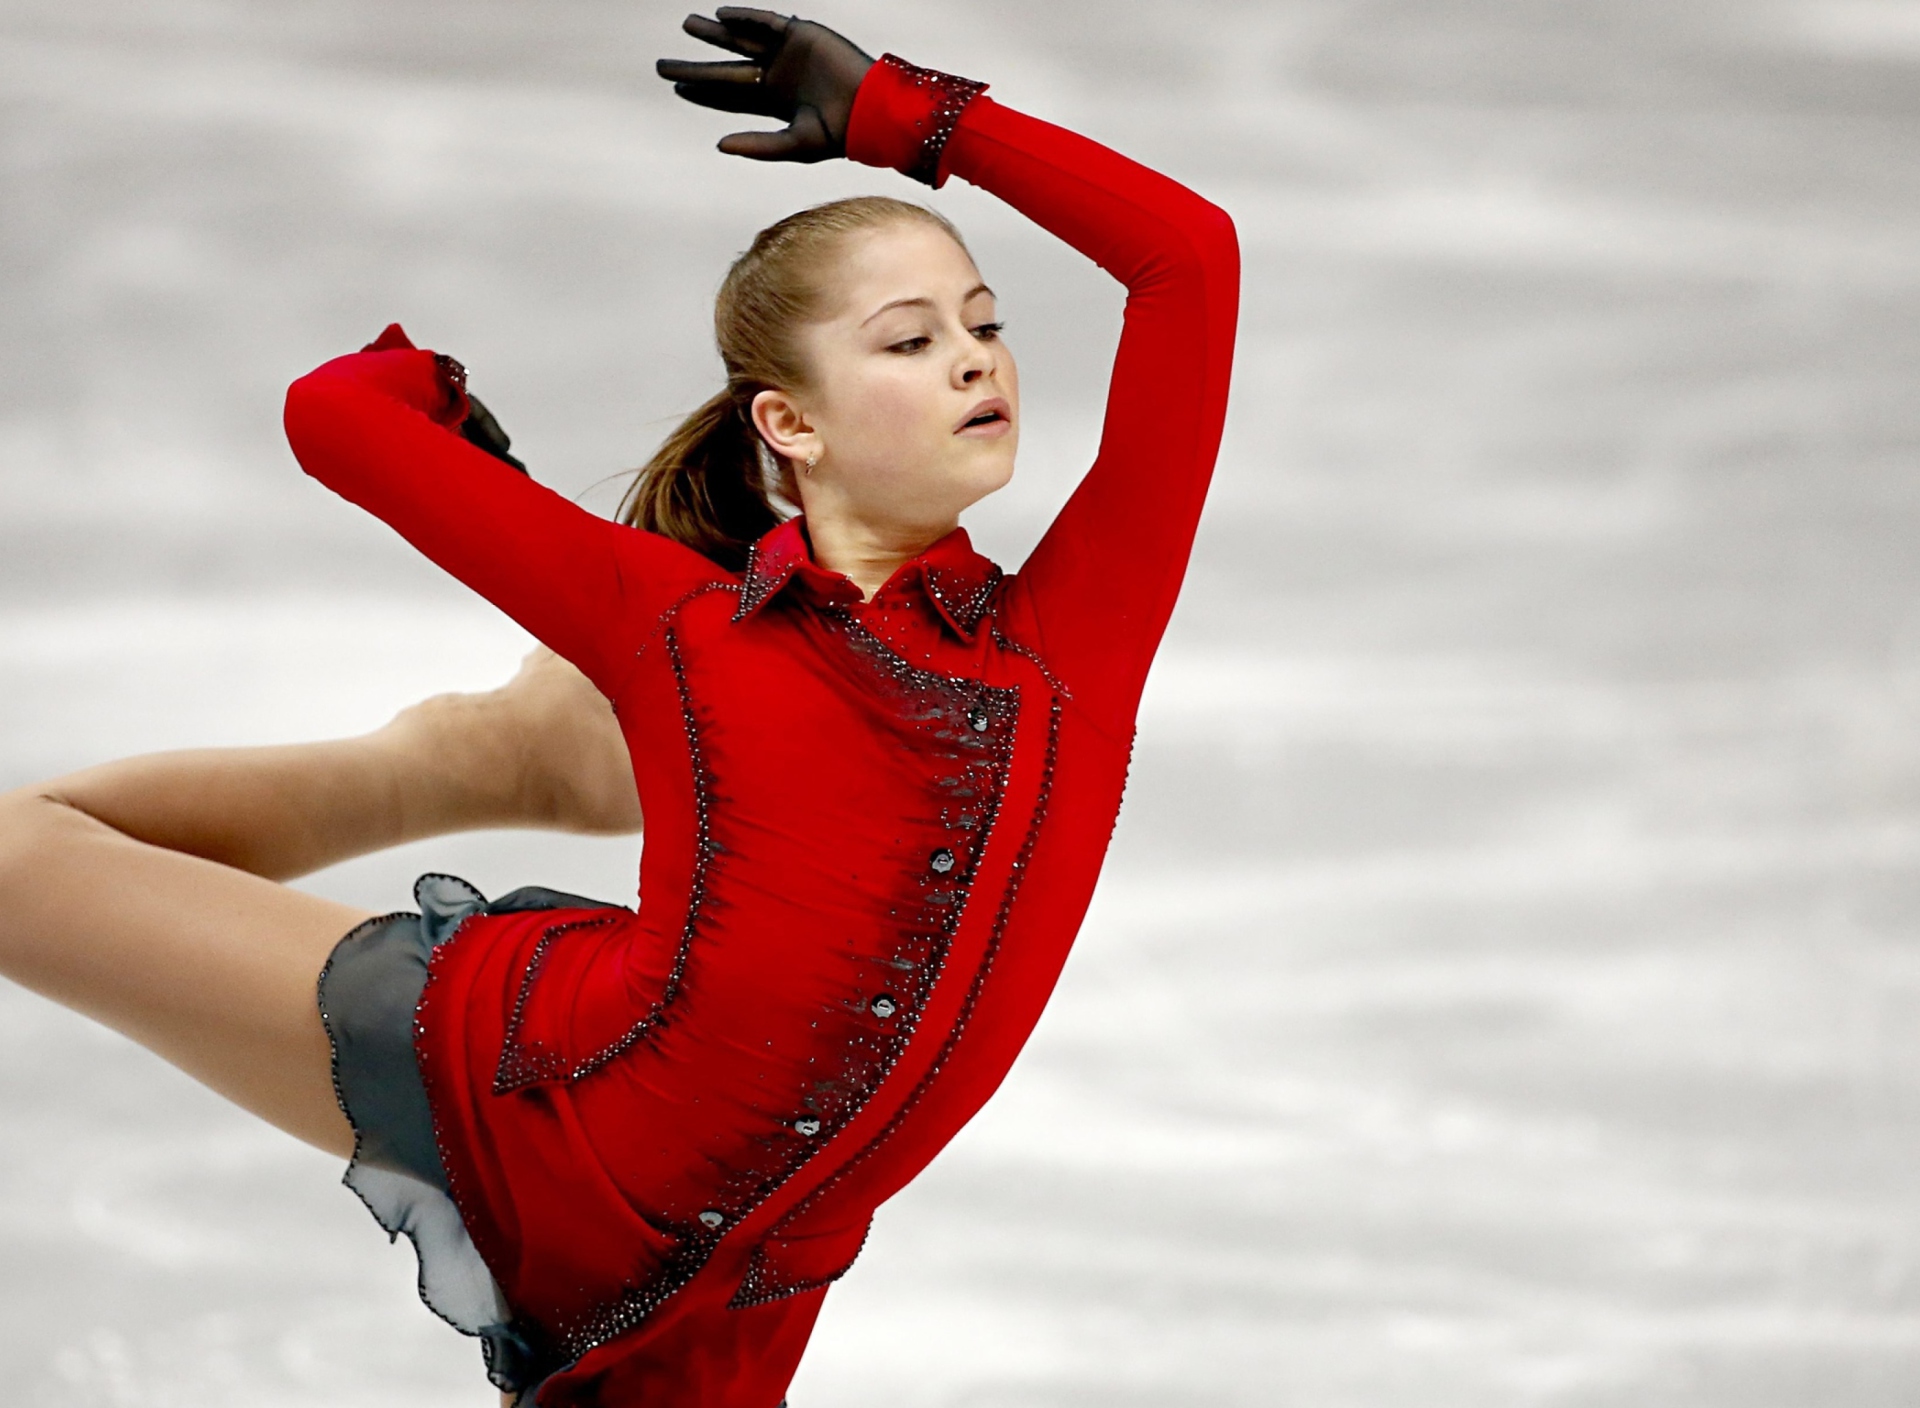 yulia lipnitskaya champion in sochi 2014 winter ol